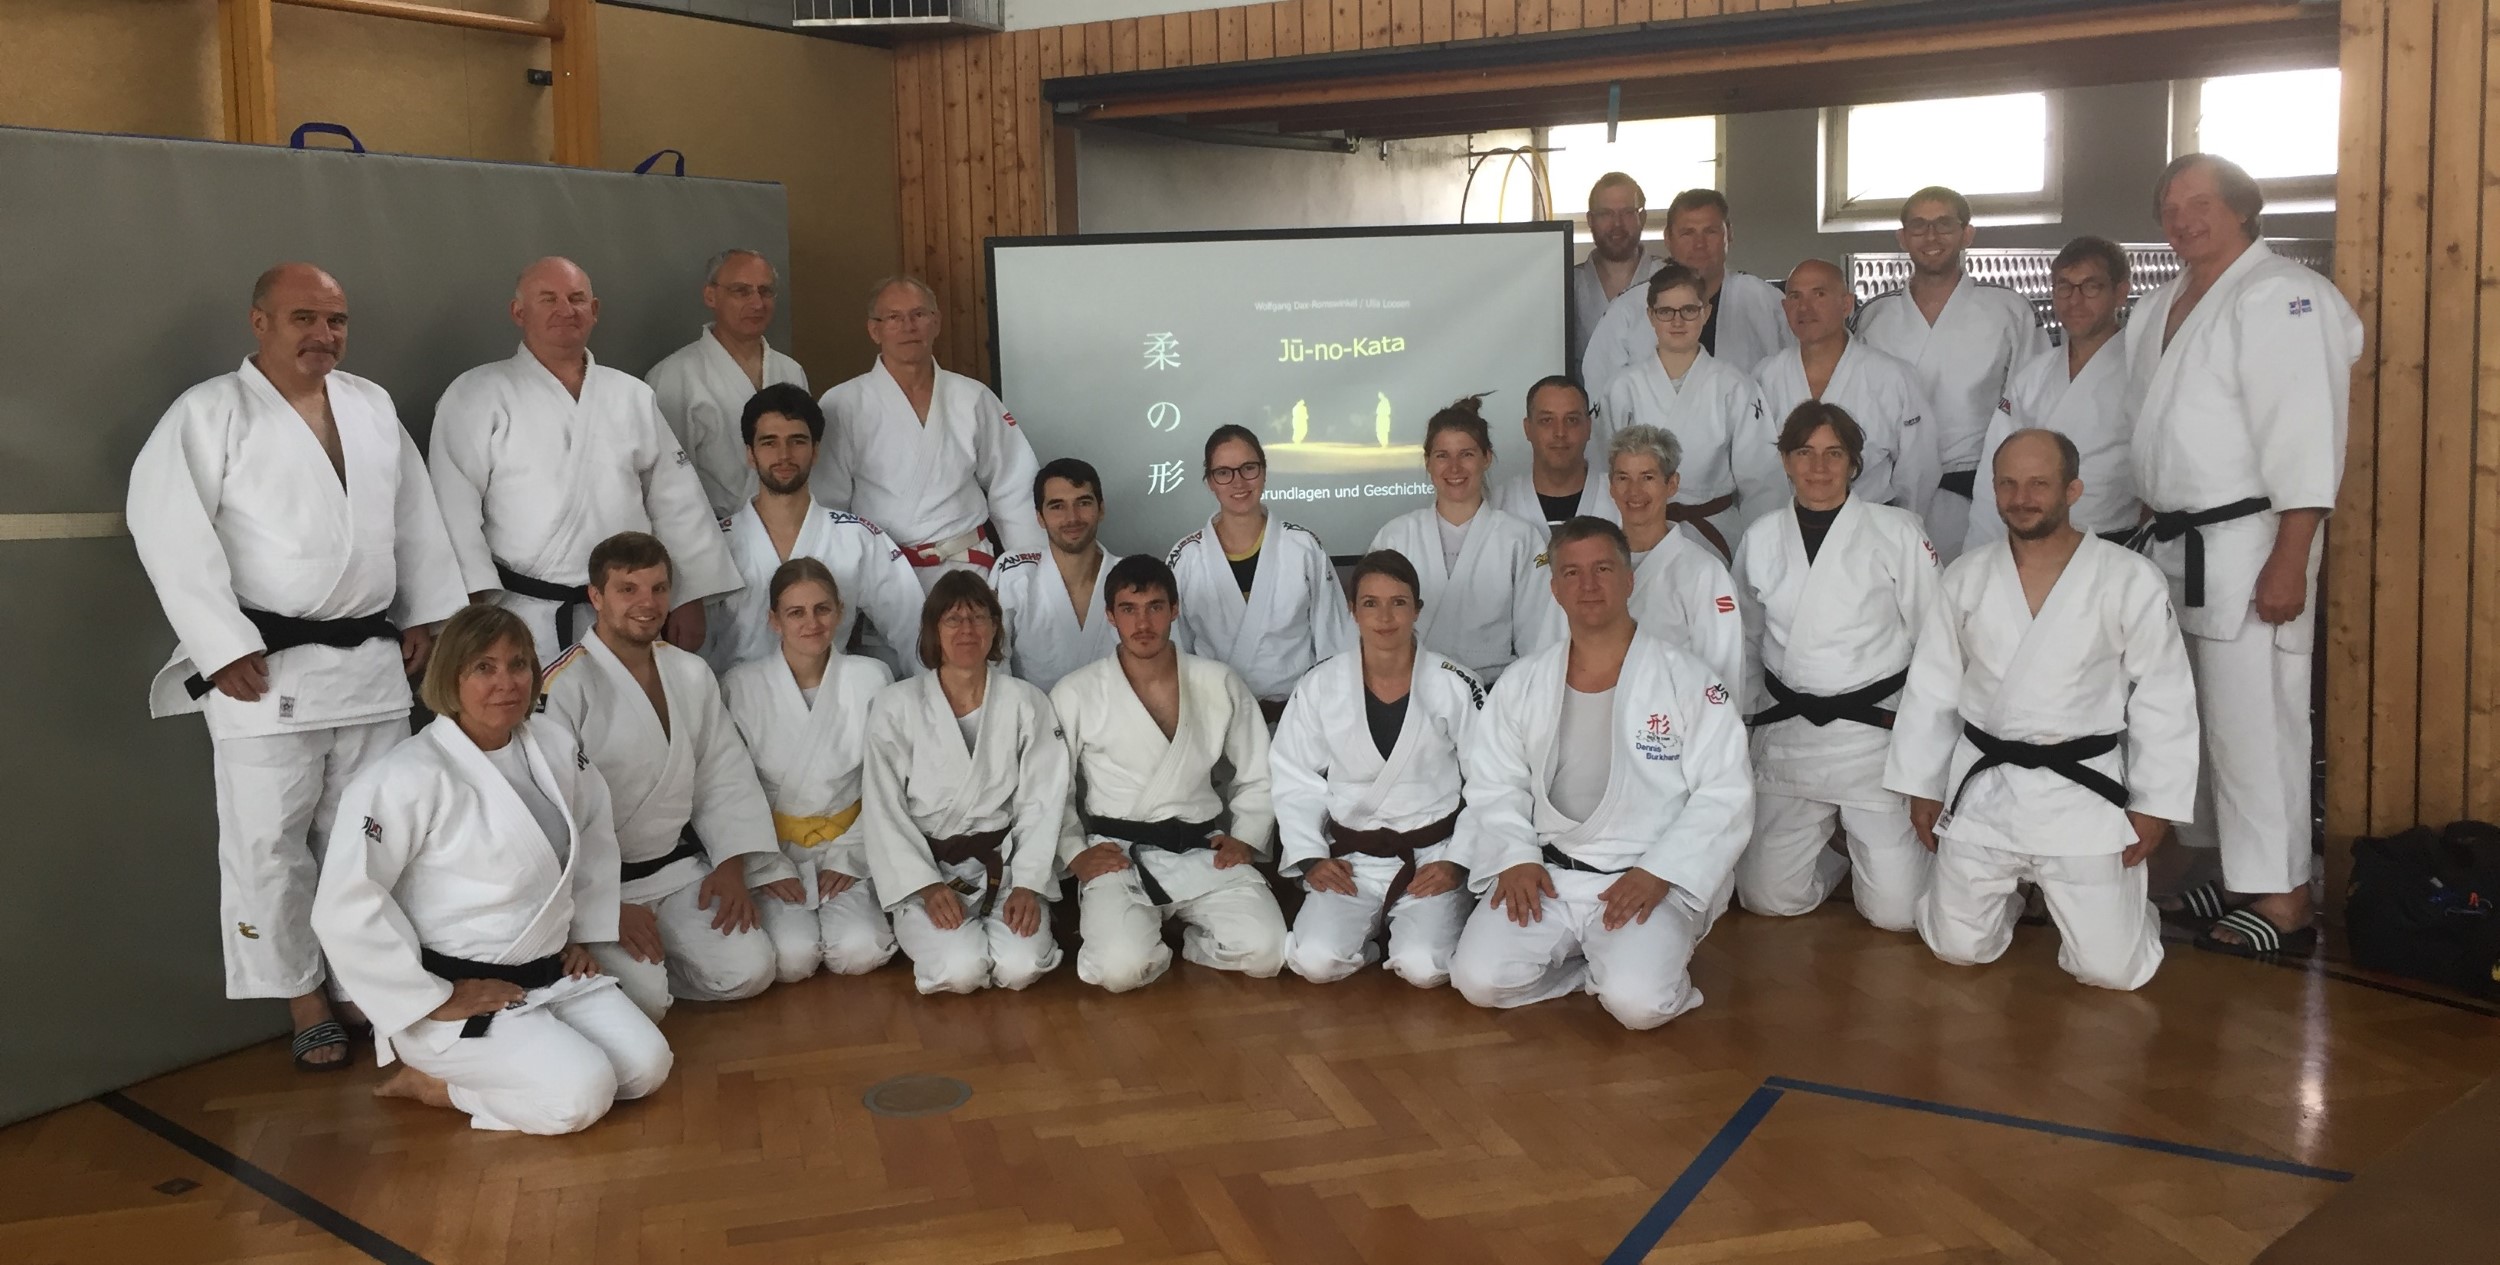 Ju-no-Kata intensiv – zwei Tage Lehrgang mit Teilnehmern aus nah und fern